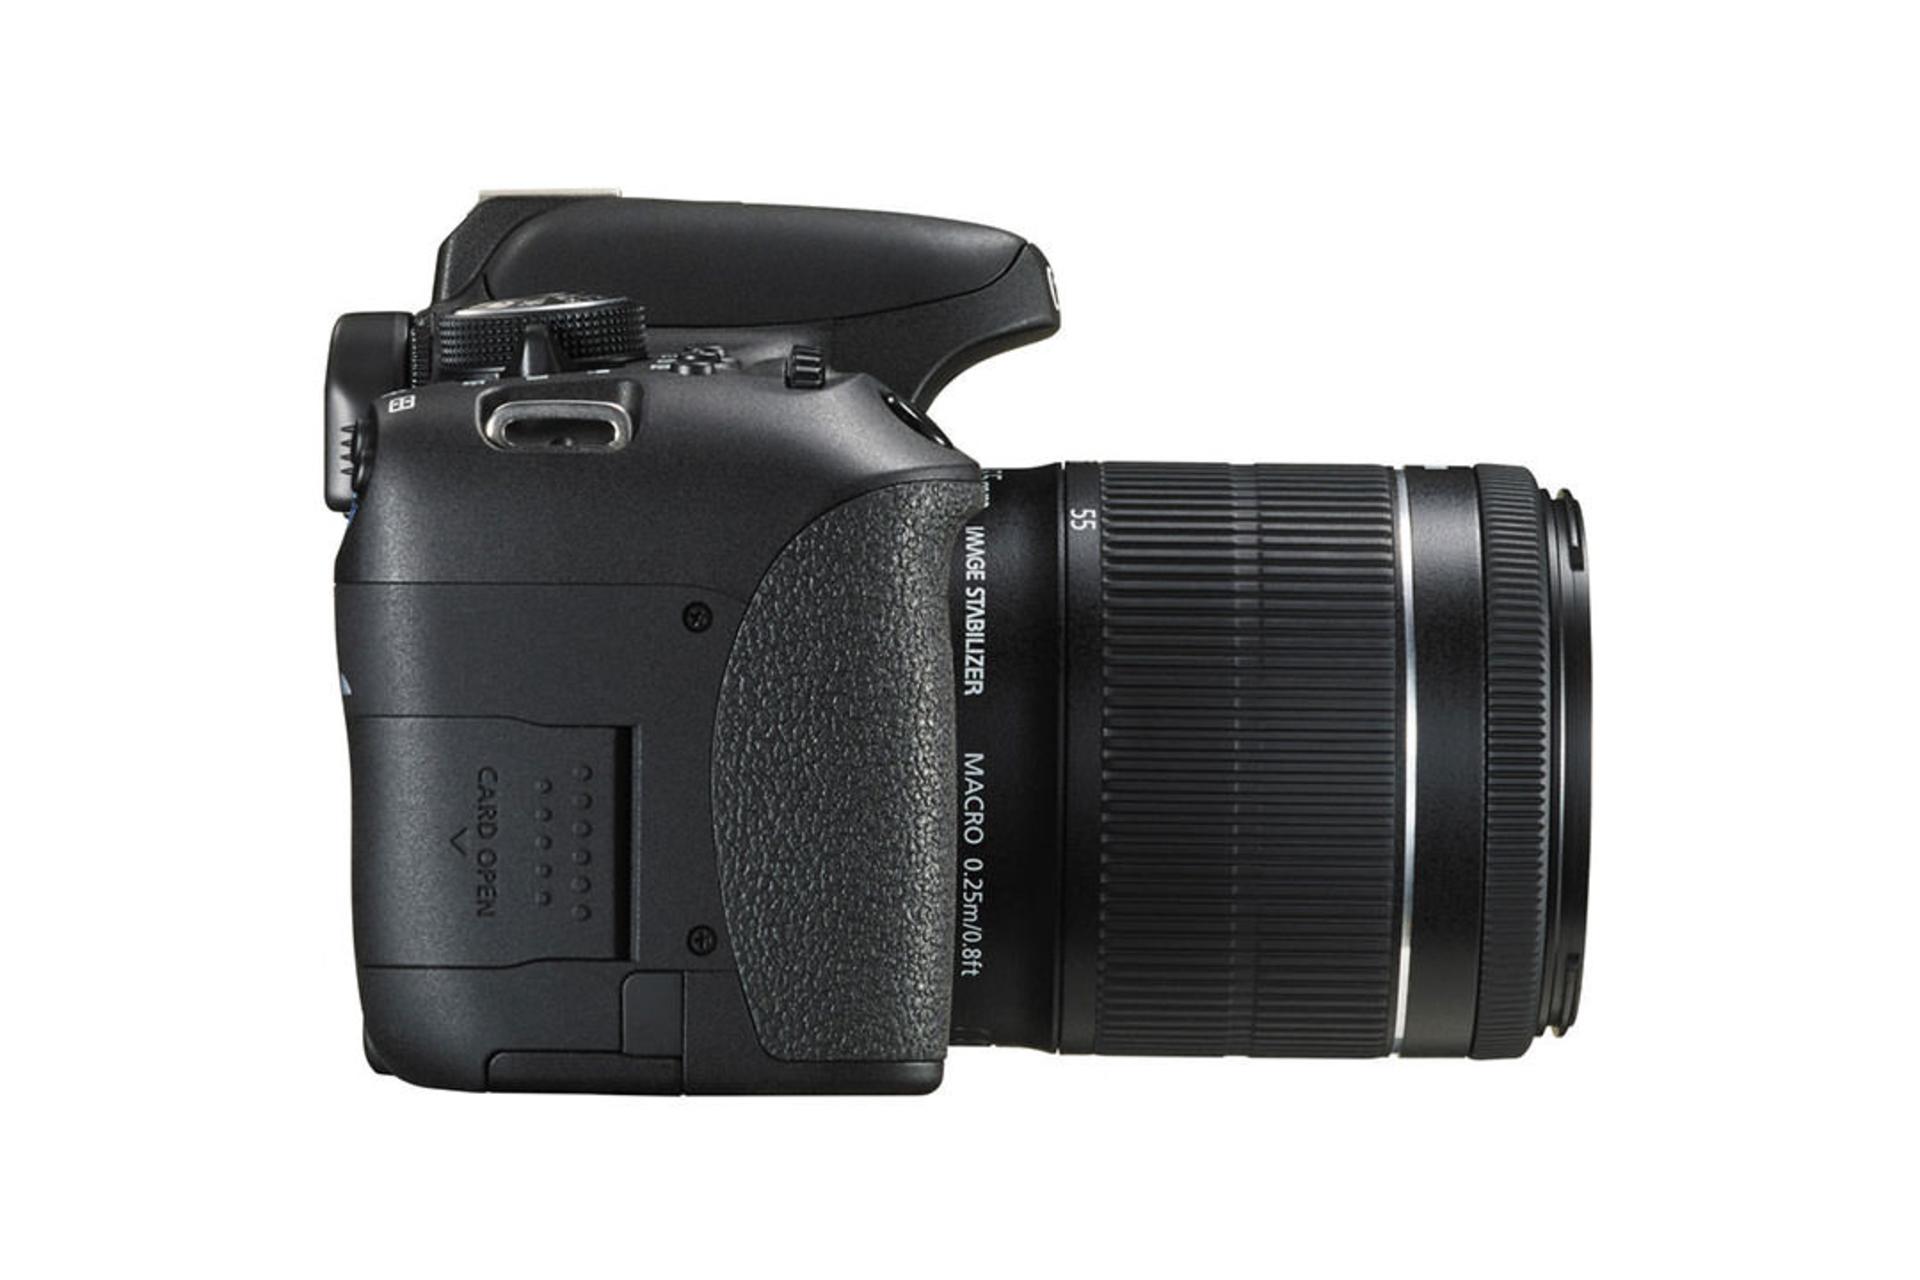 Canon EOS 750D (Rebel T6i / Kiss X8i)	